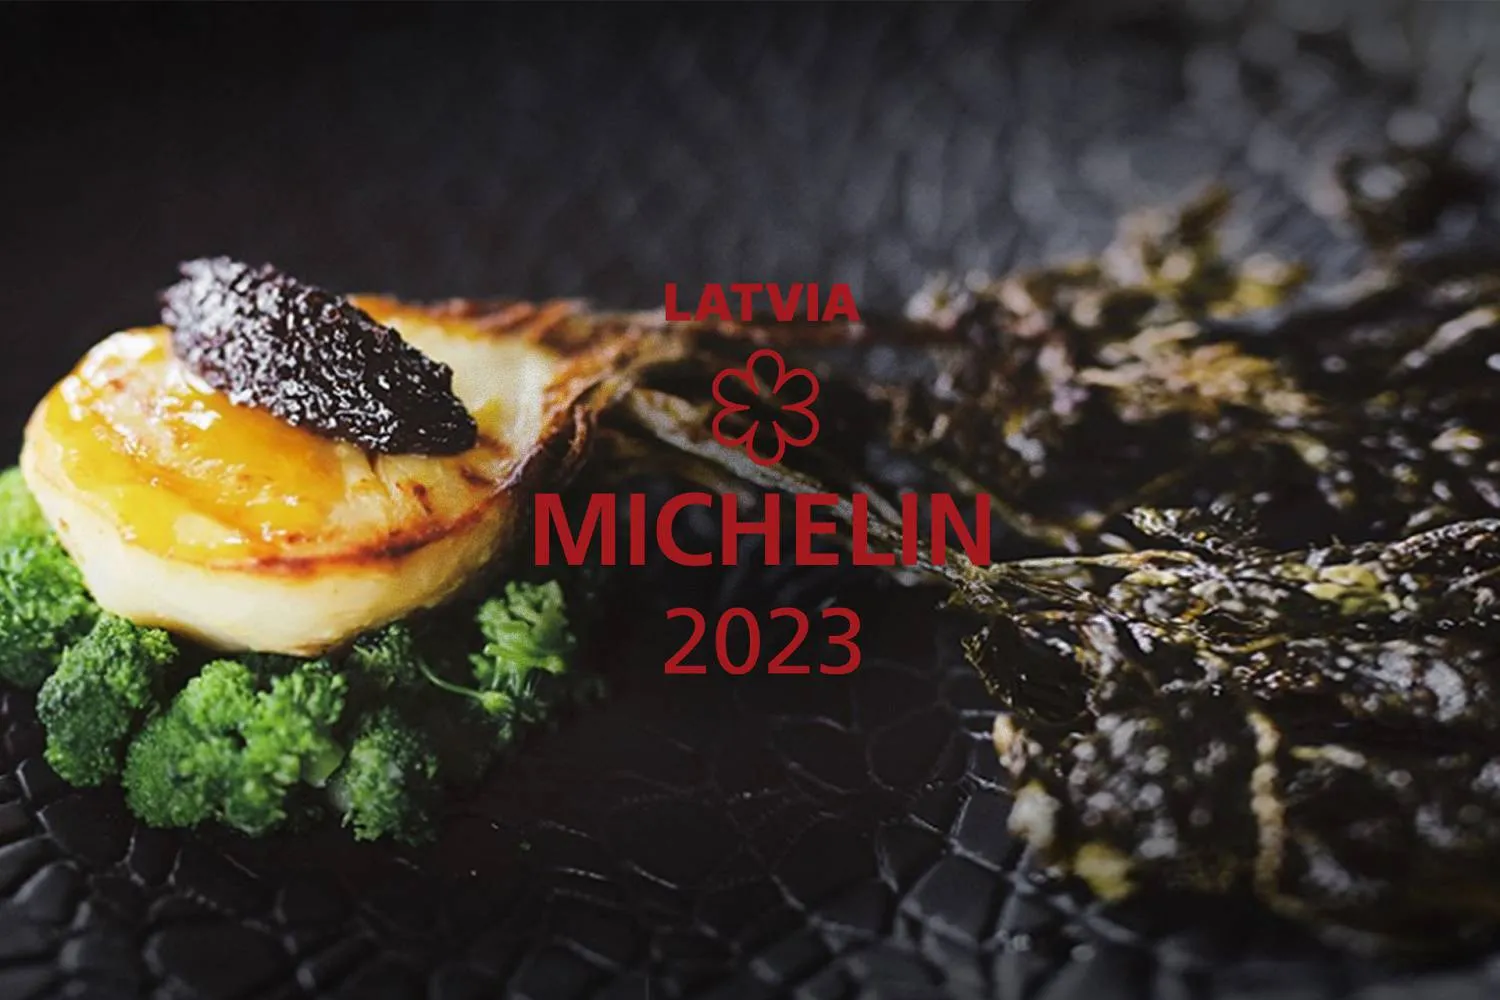 Michelin zvaigznes Latvijā – īsteno sapņu kāzas nominētajos restorānos